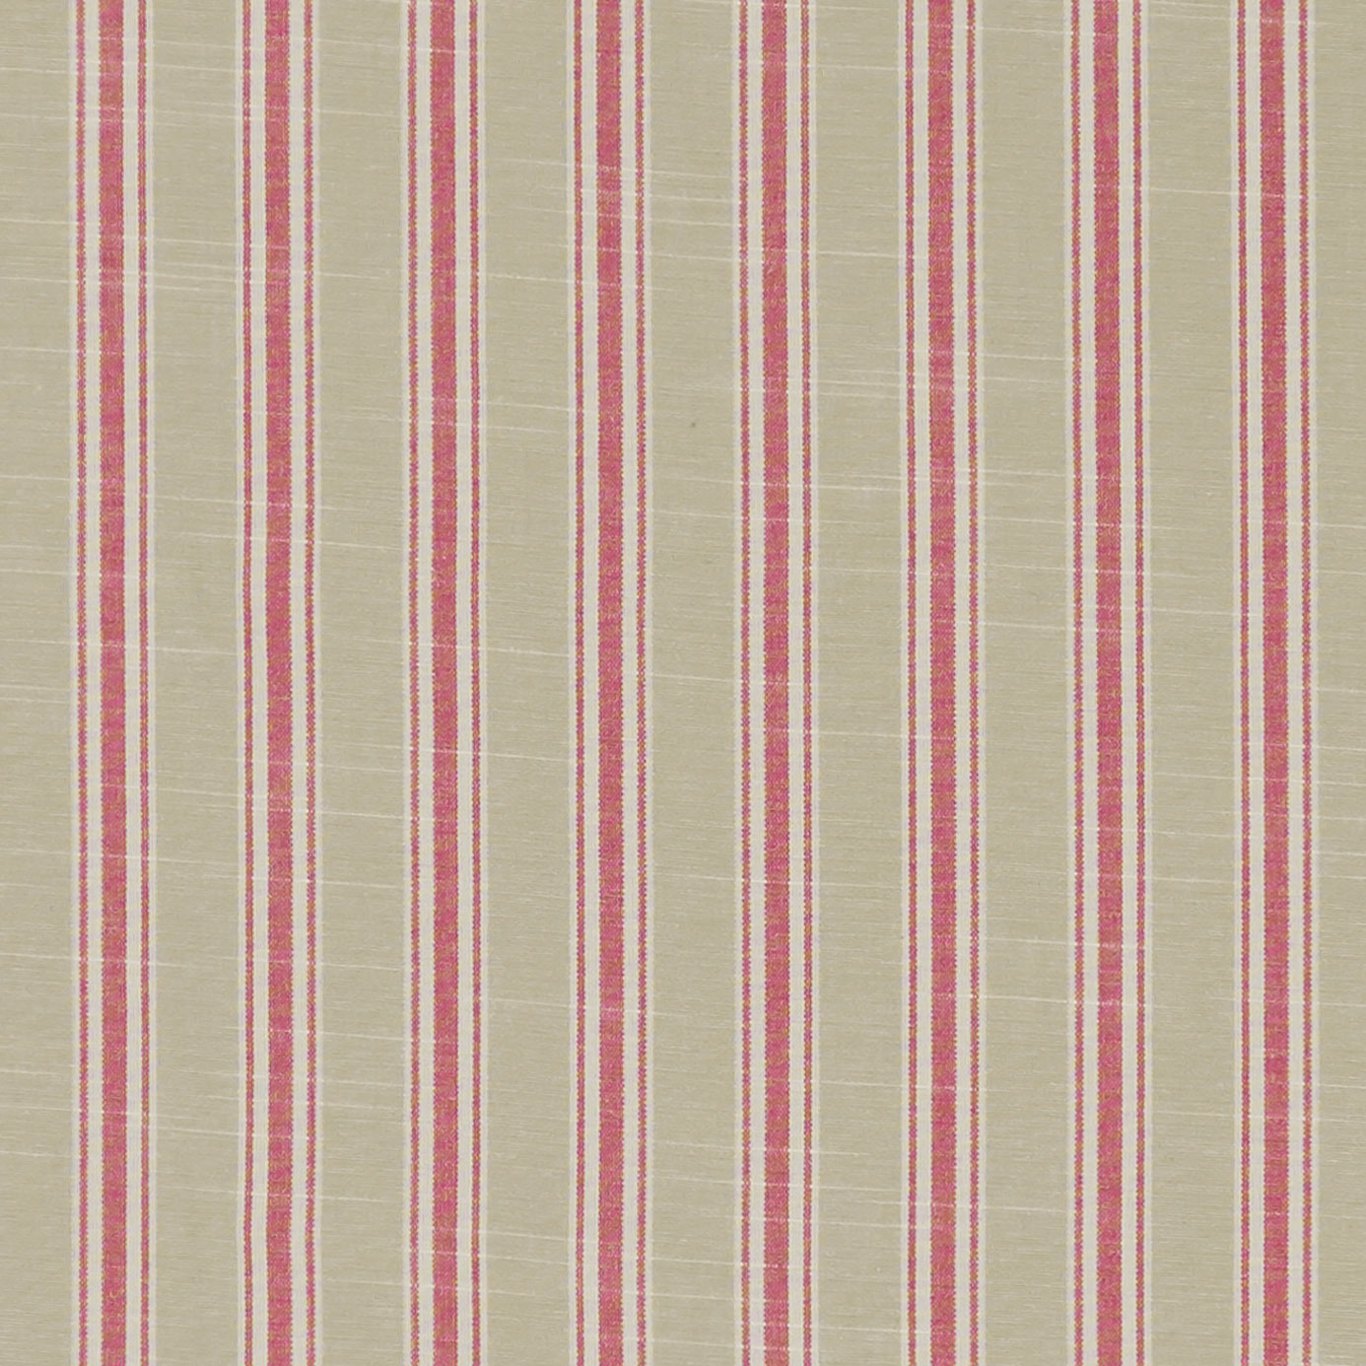 Thornwick Fuchsia Fabric by STG